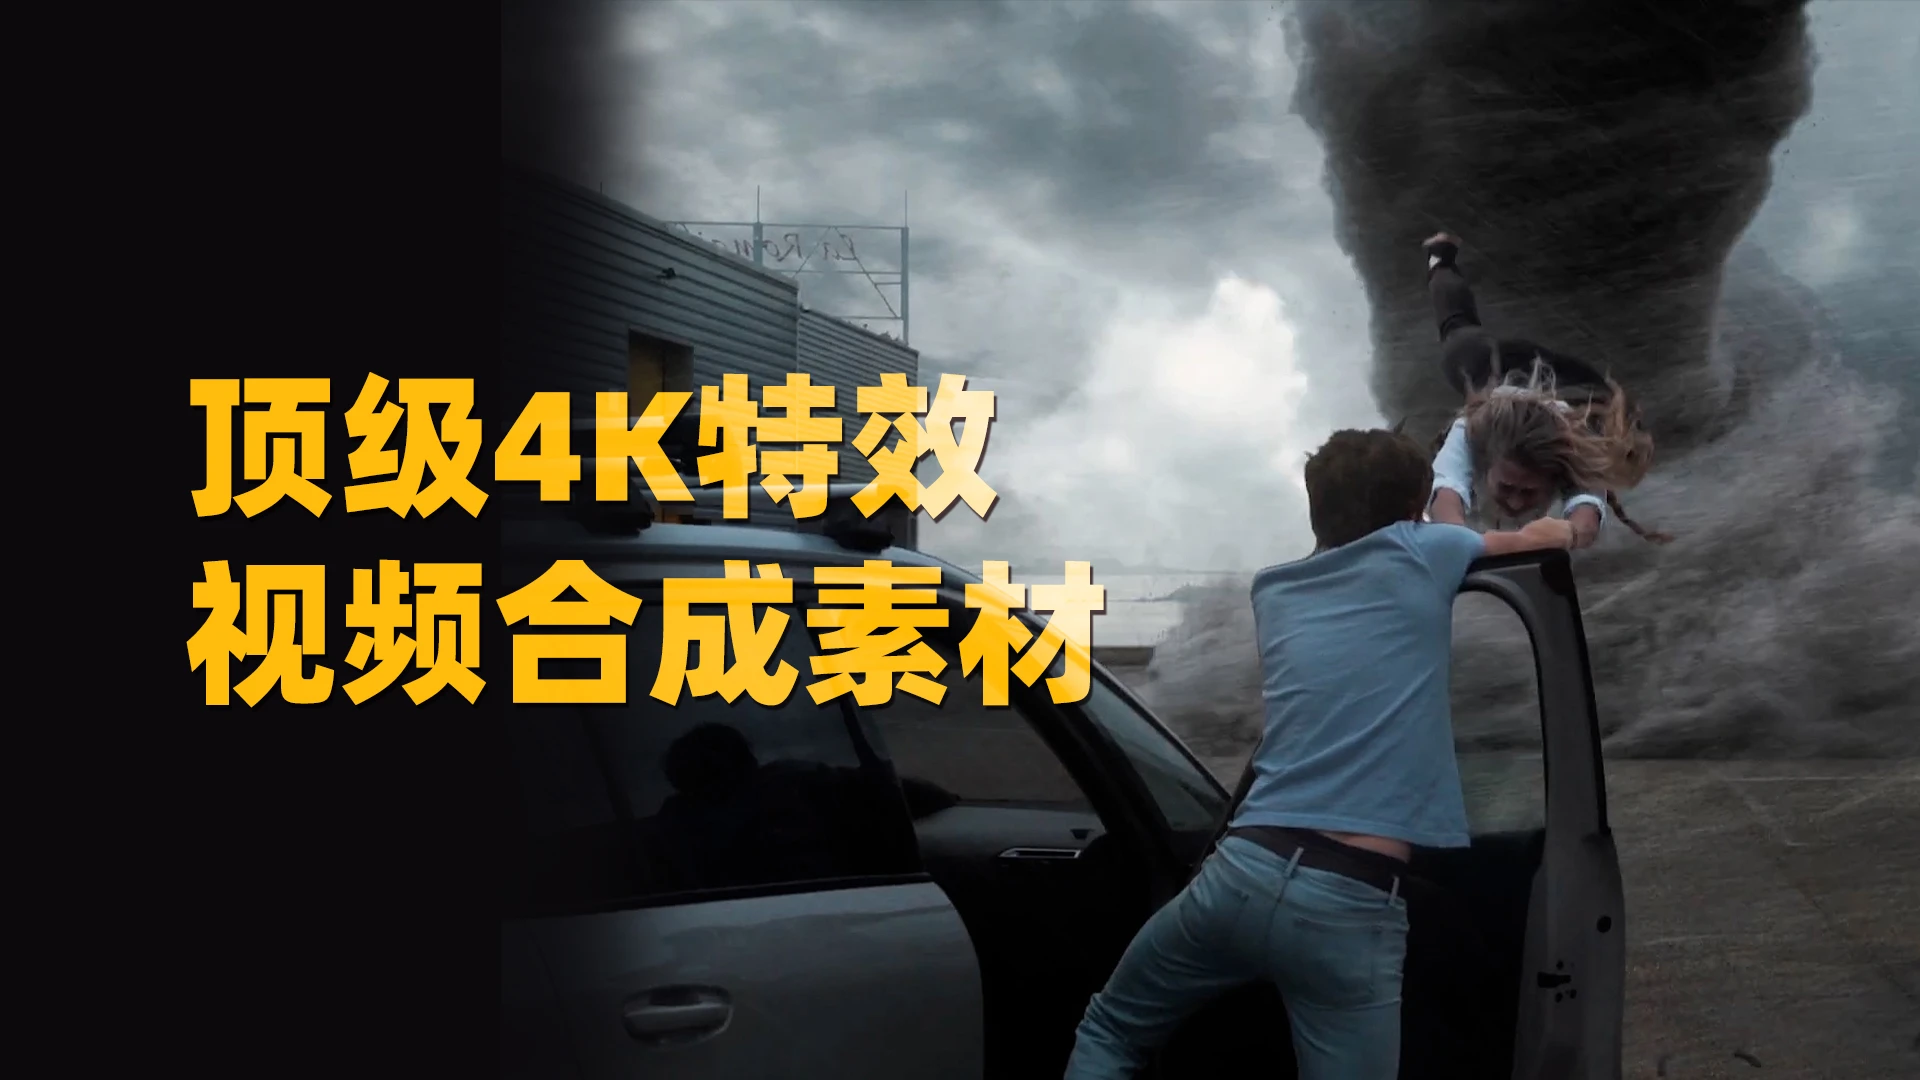 一键拖拽电影级4K视觉特效世界末日灾难龙卷风海啸陨石视频动画